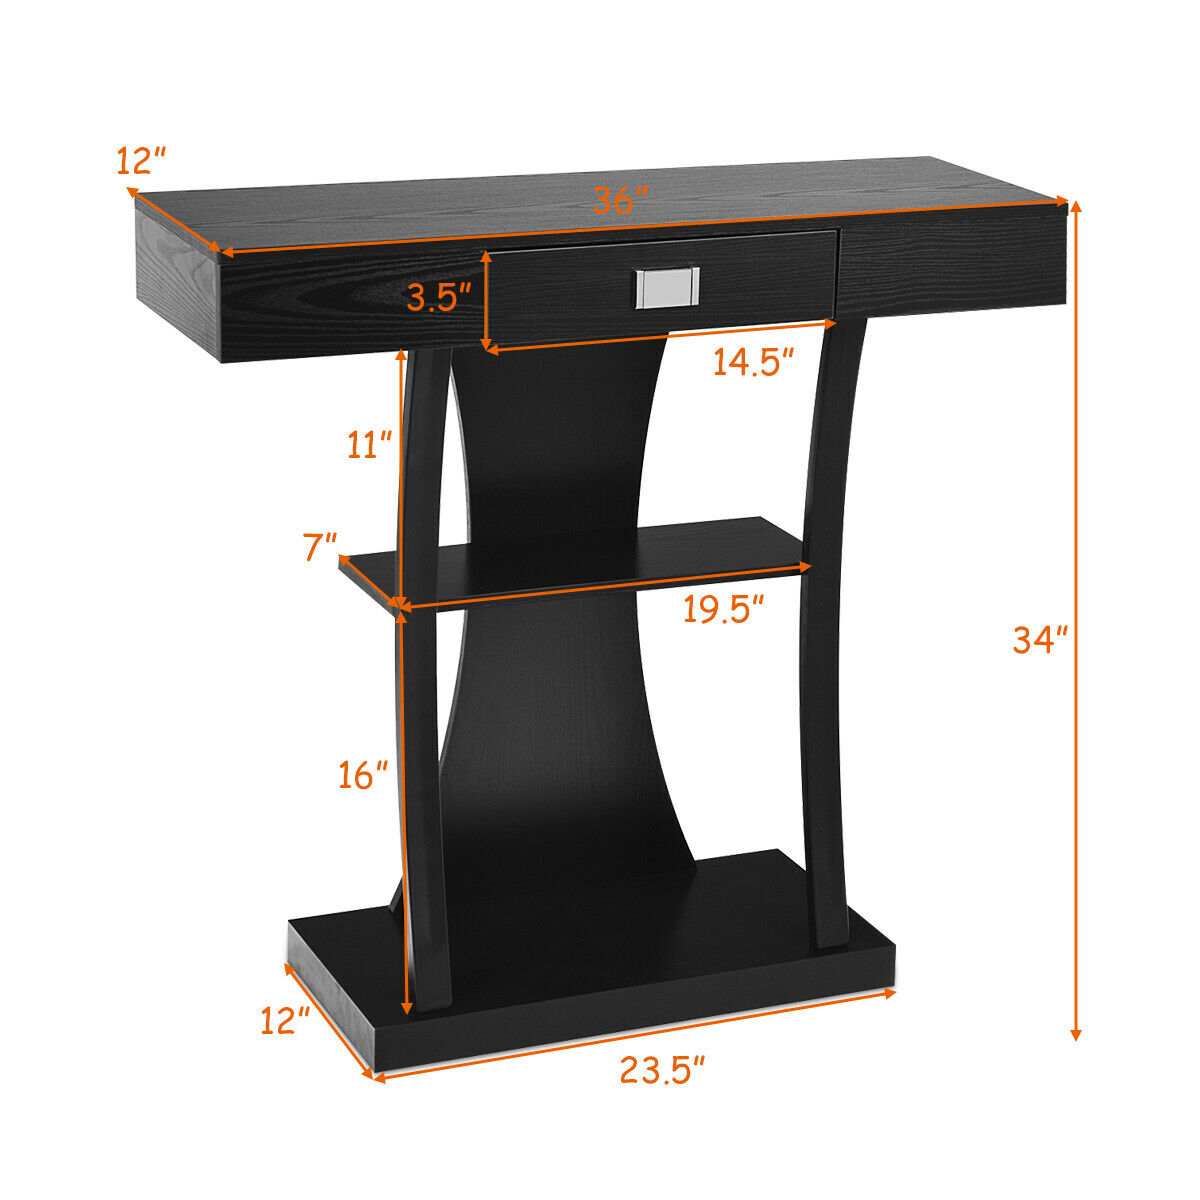 Gymax Black Harri Console Table Entryway Porch Desk Storage